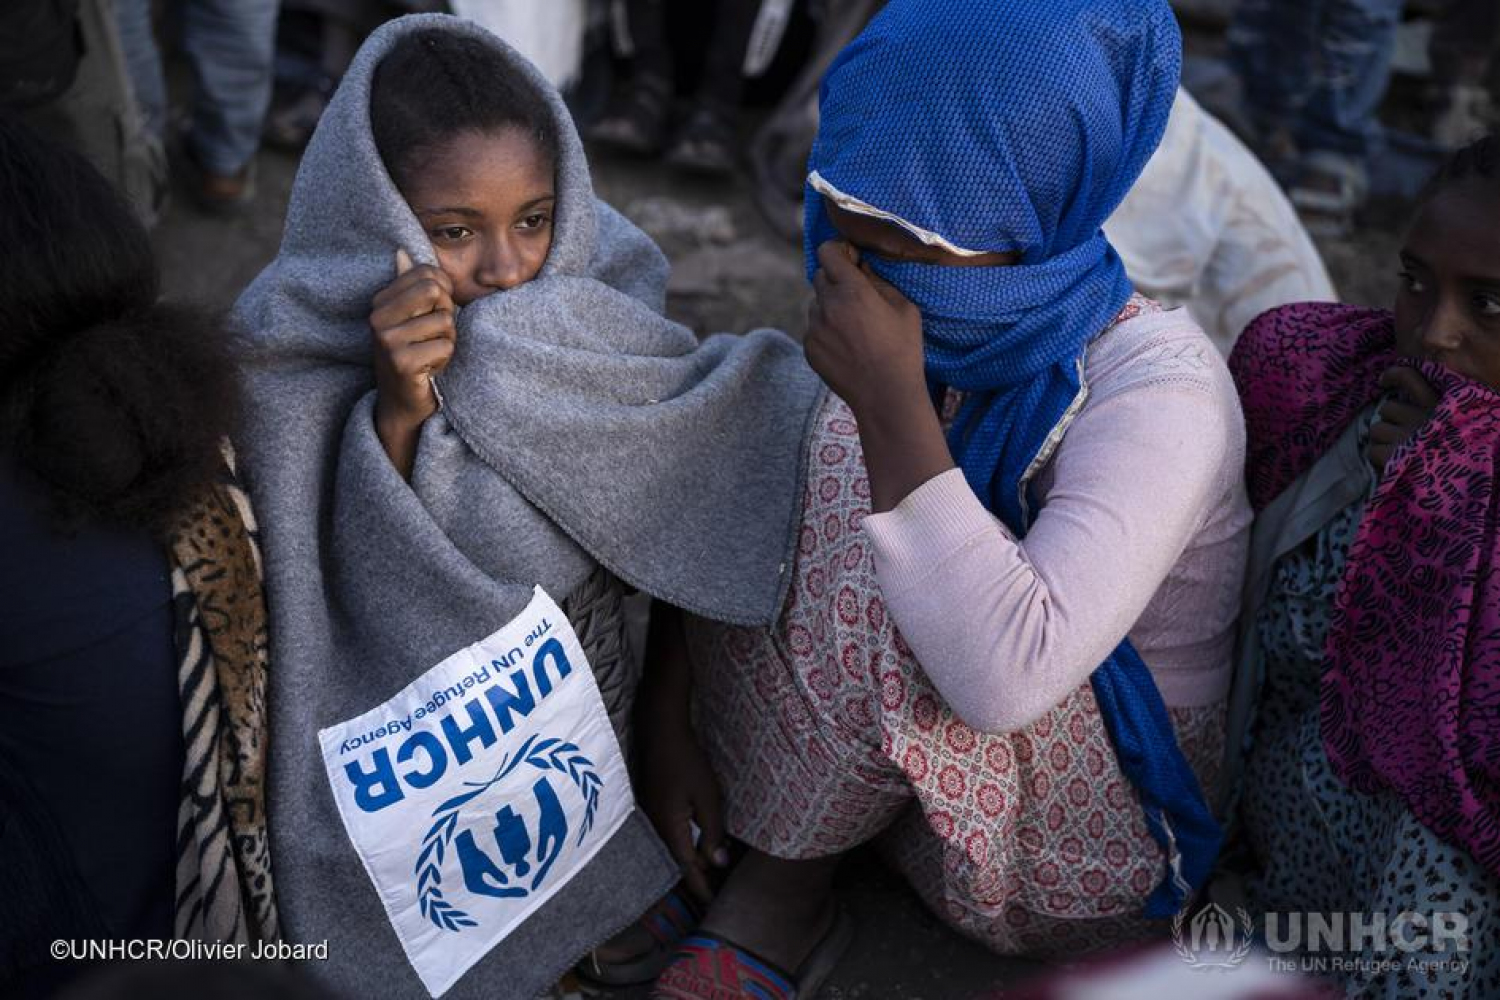 © UNHCR / Olivier Jobard